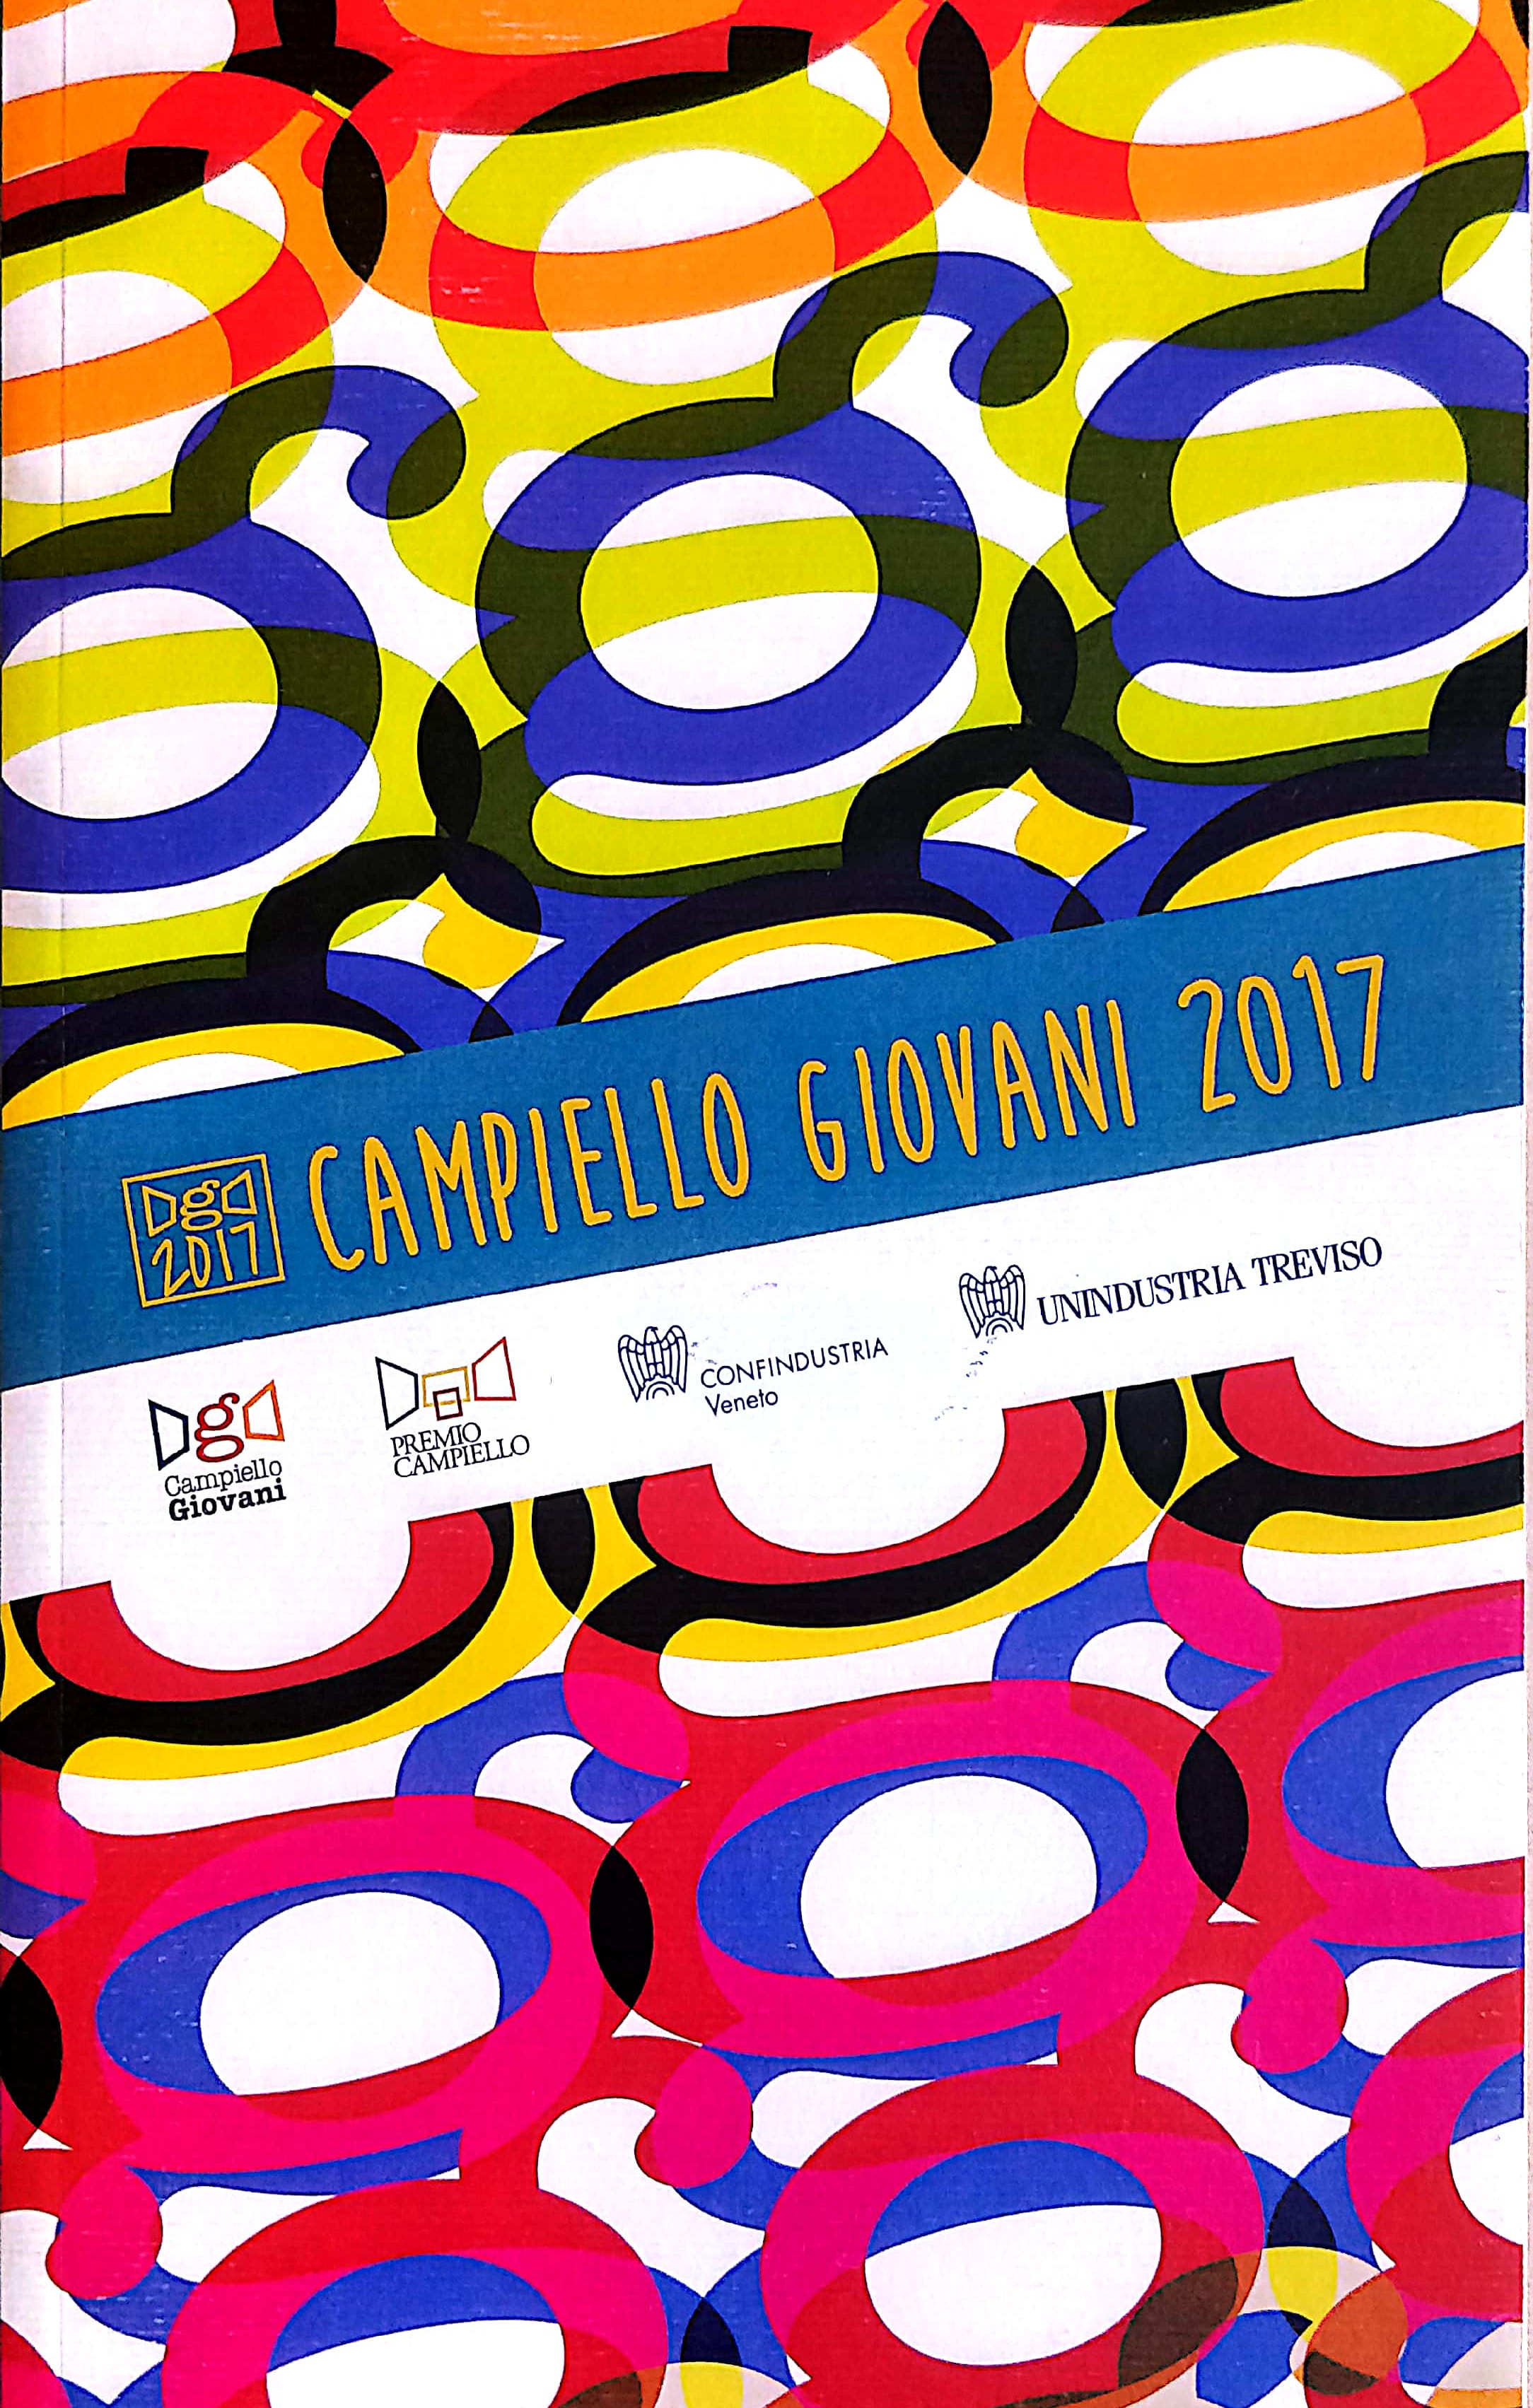 Premio Campiello 2017